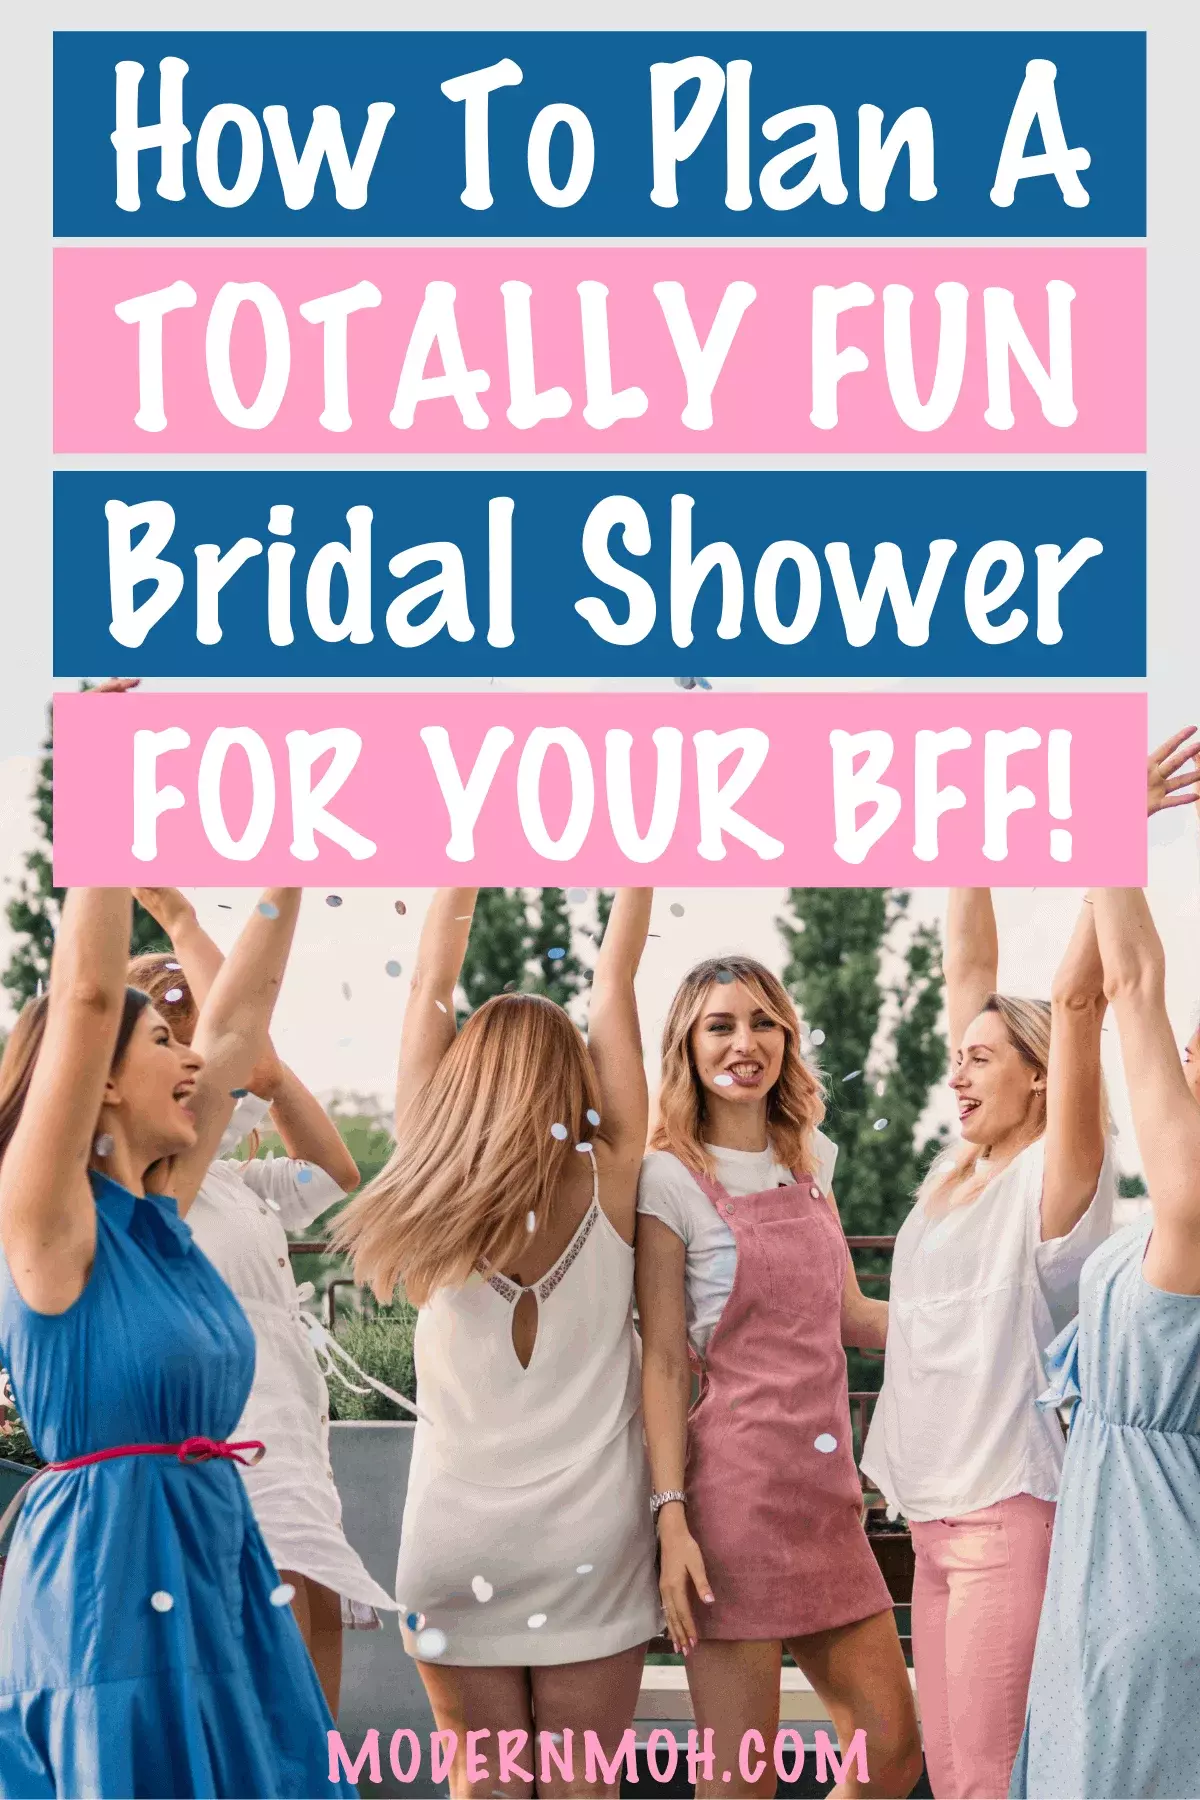 Bridal Shower Planning Checklist